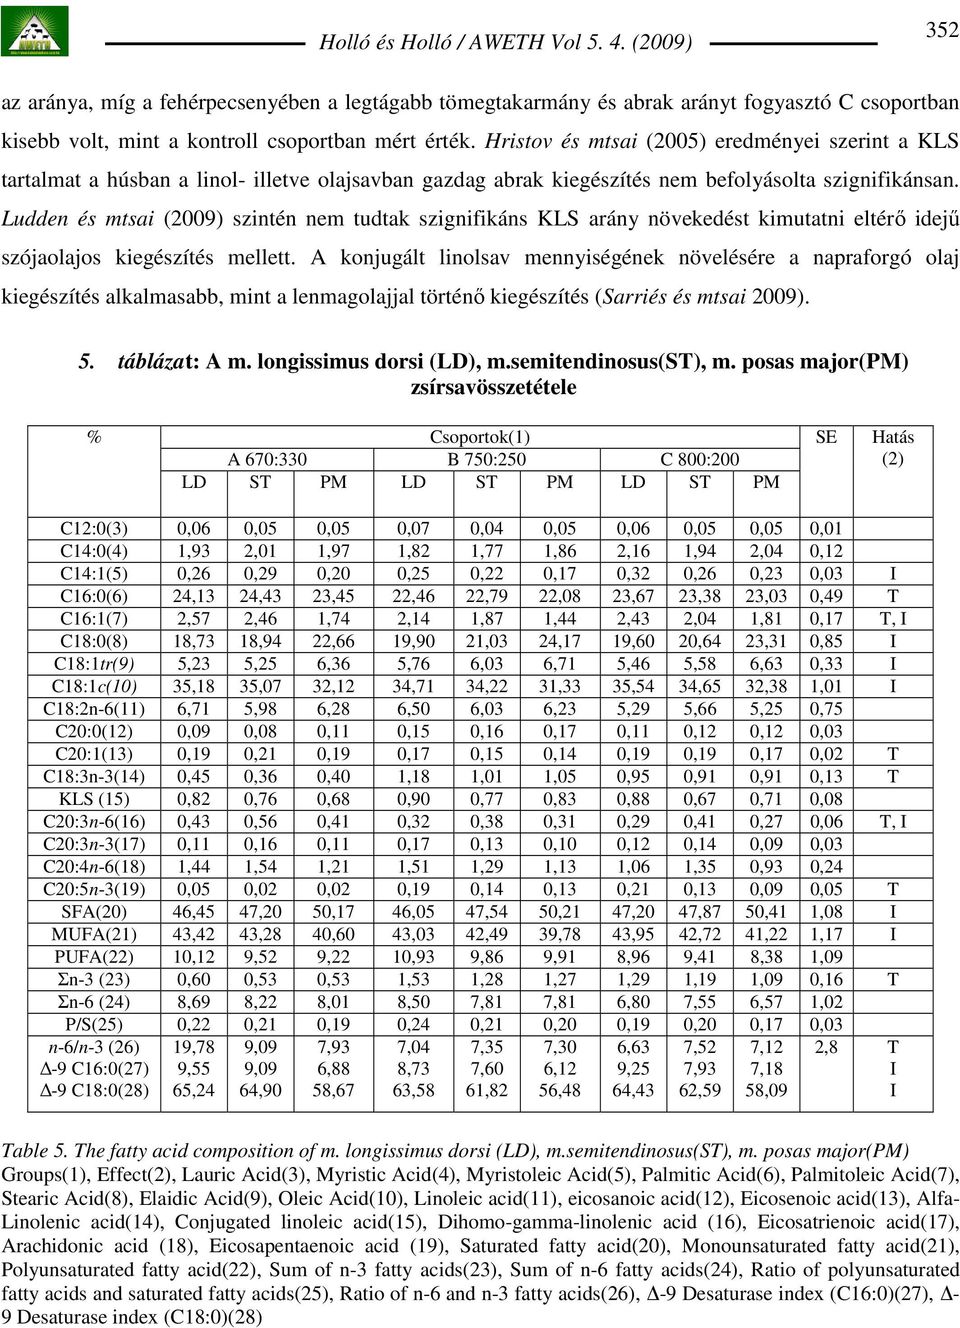 Ludden és mtsai (2009) szintén nem tudtak szignifikáns KLS arány növekedést kimutatni eltérı idejő szójaolajos kiegészítés mellett.